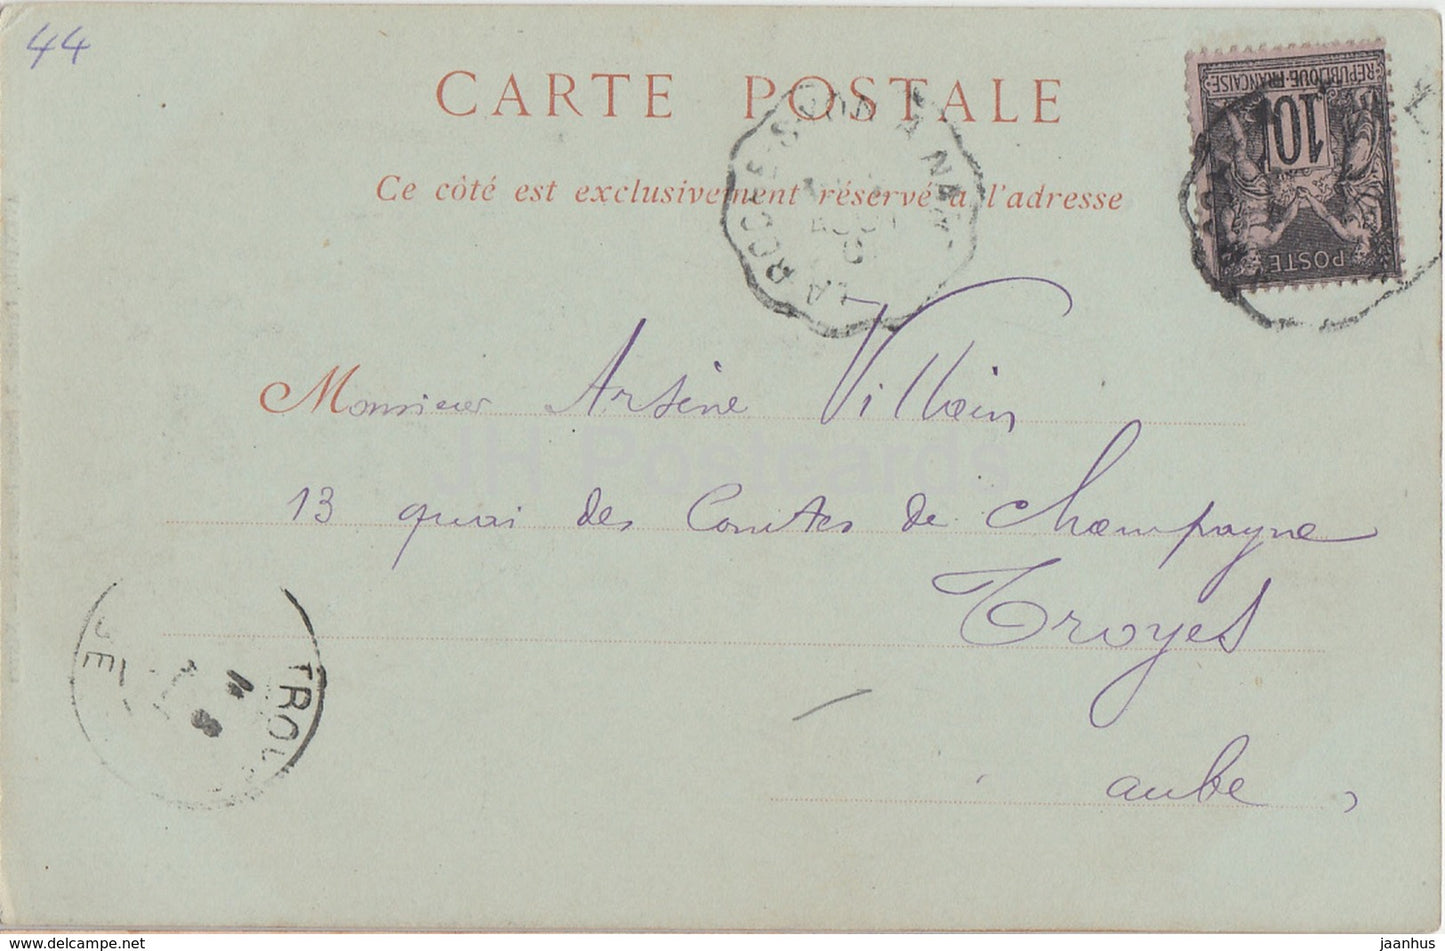 Env de Nantes - Chateau de Clisson - castle - 42 - old postcard - 1901 - France - used